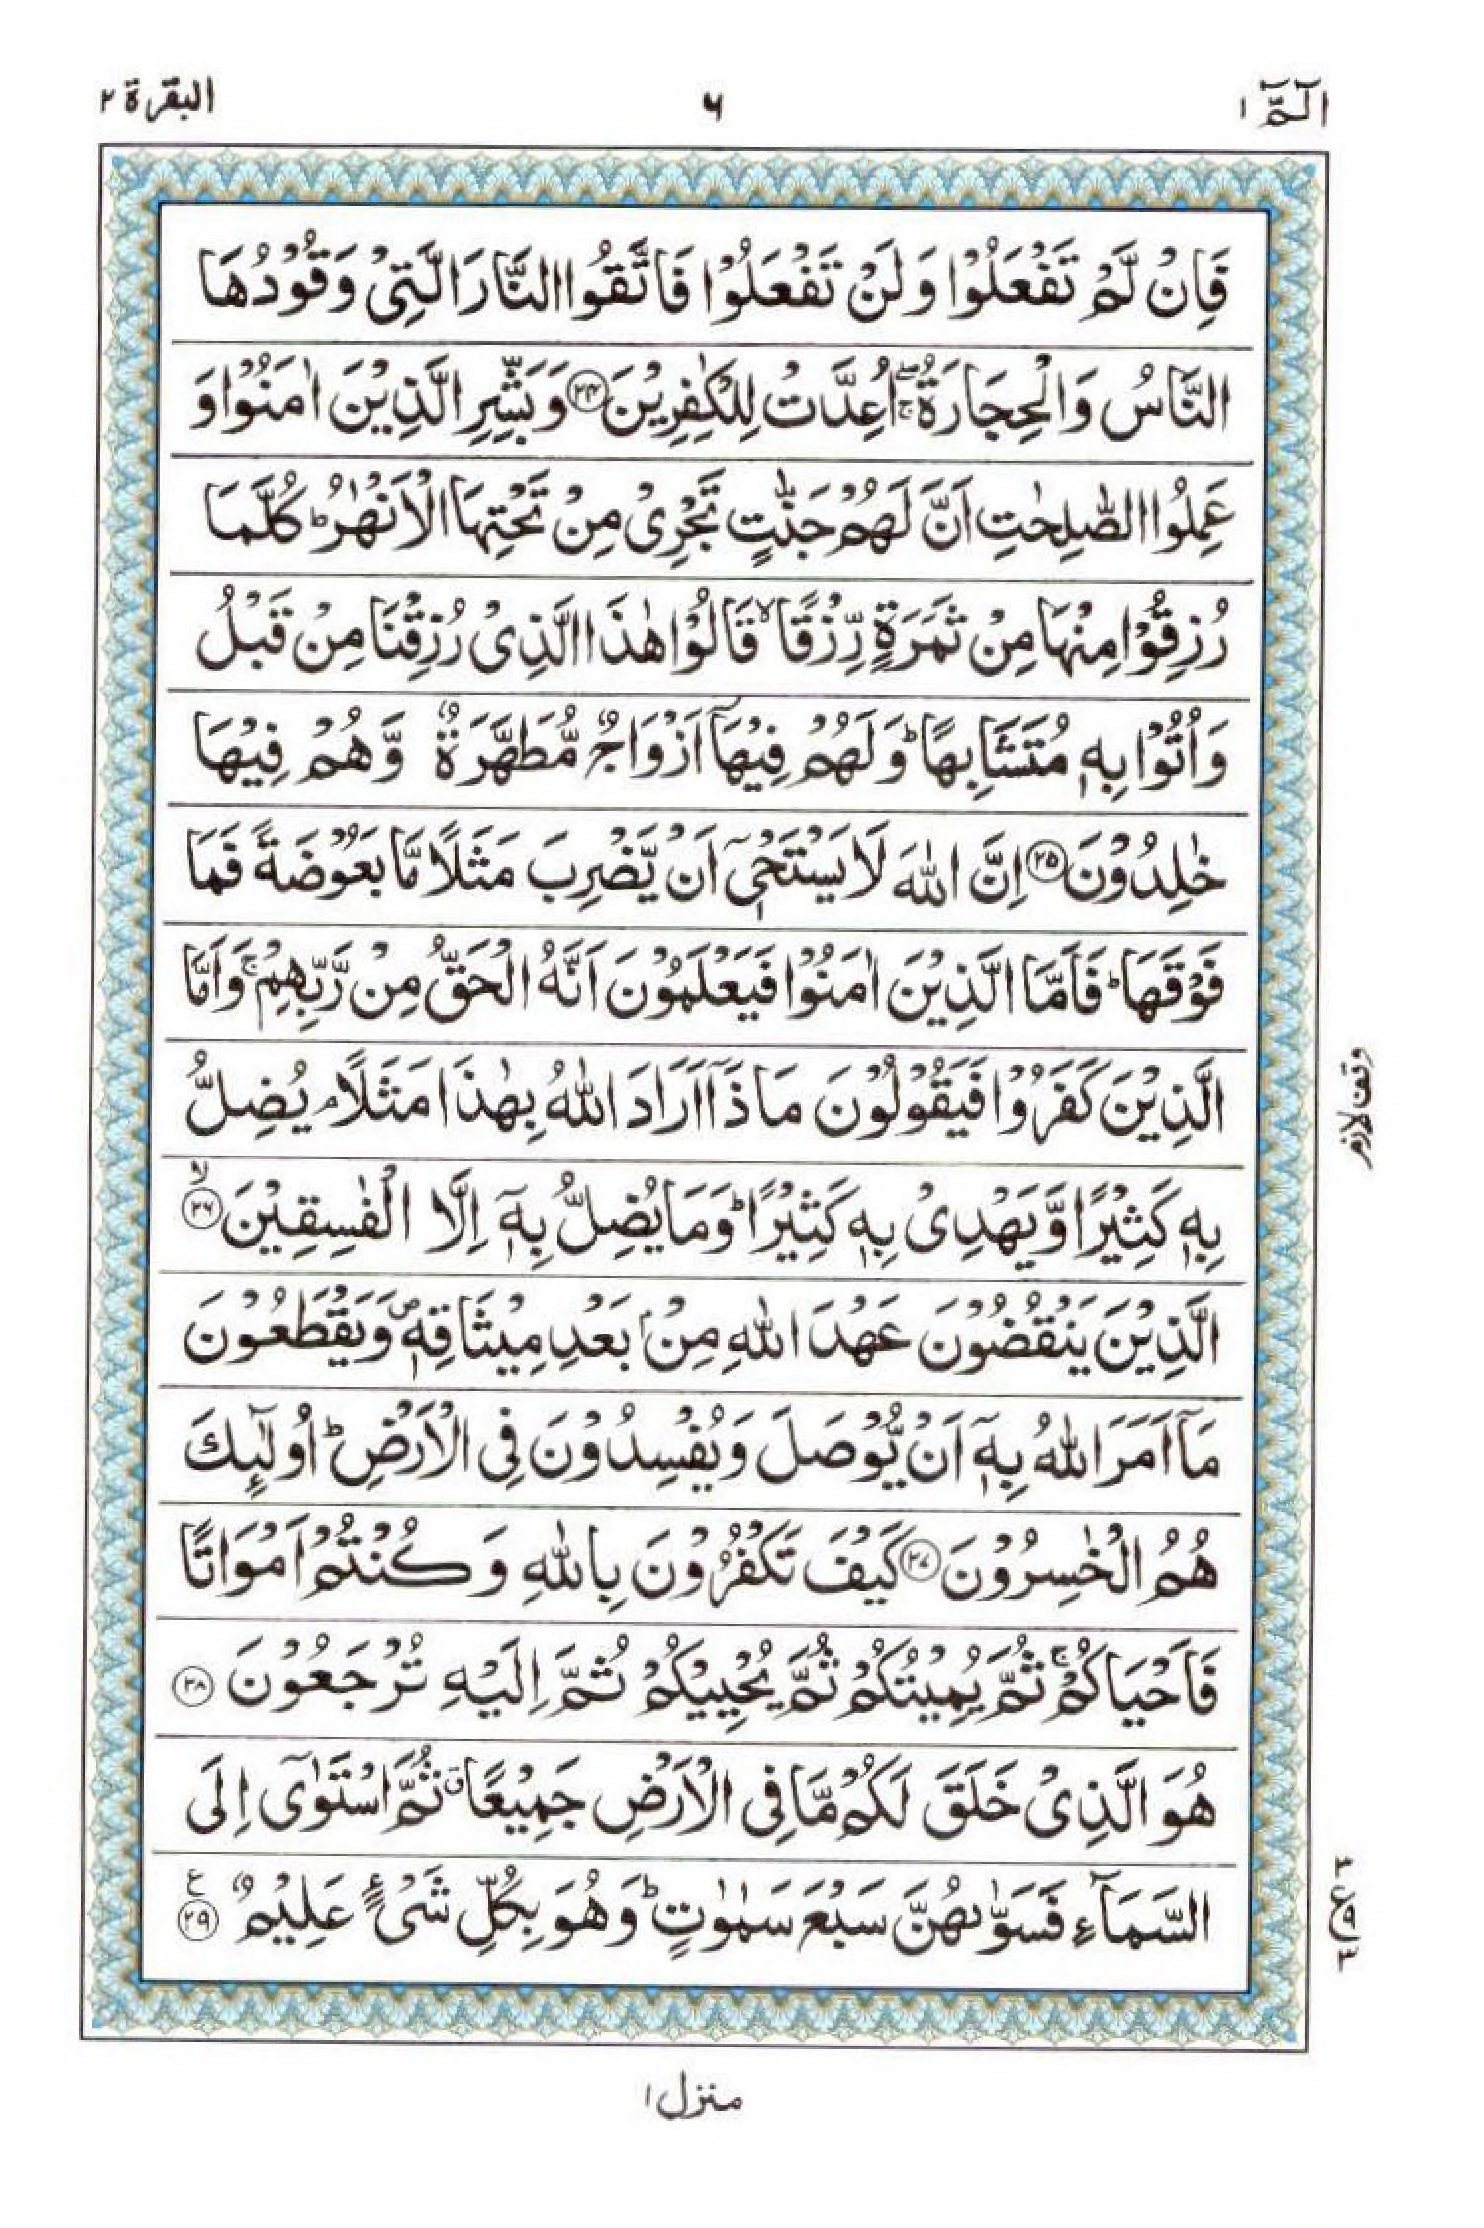 Read 15 Lines Al Quran Part 1 Page No 6, Practice Quran